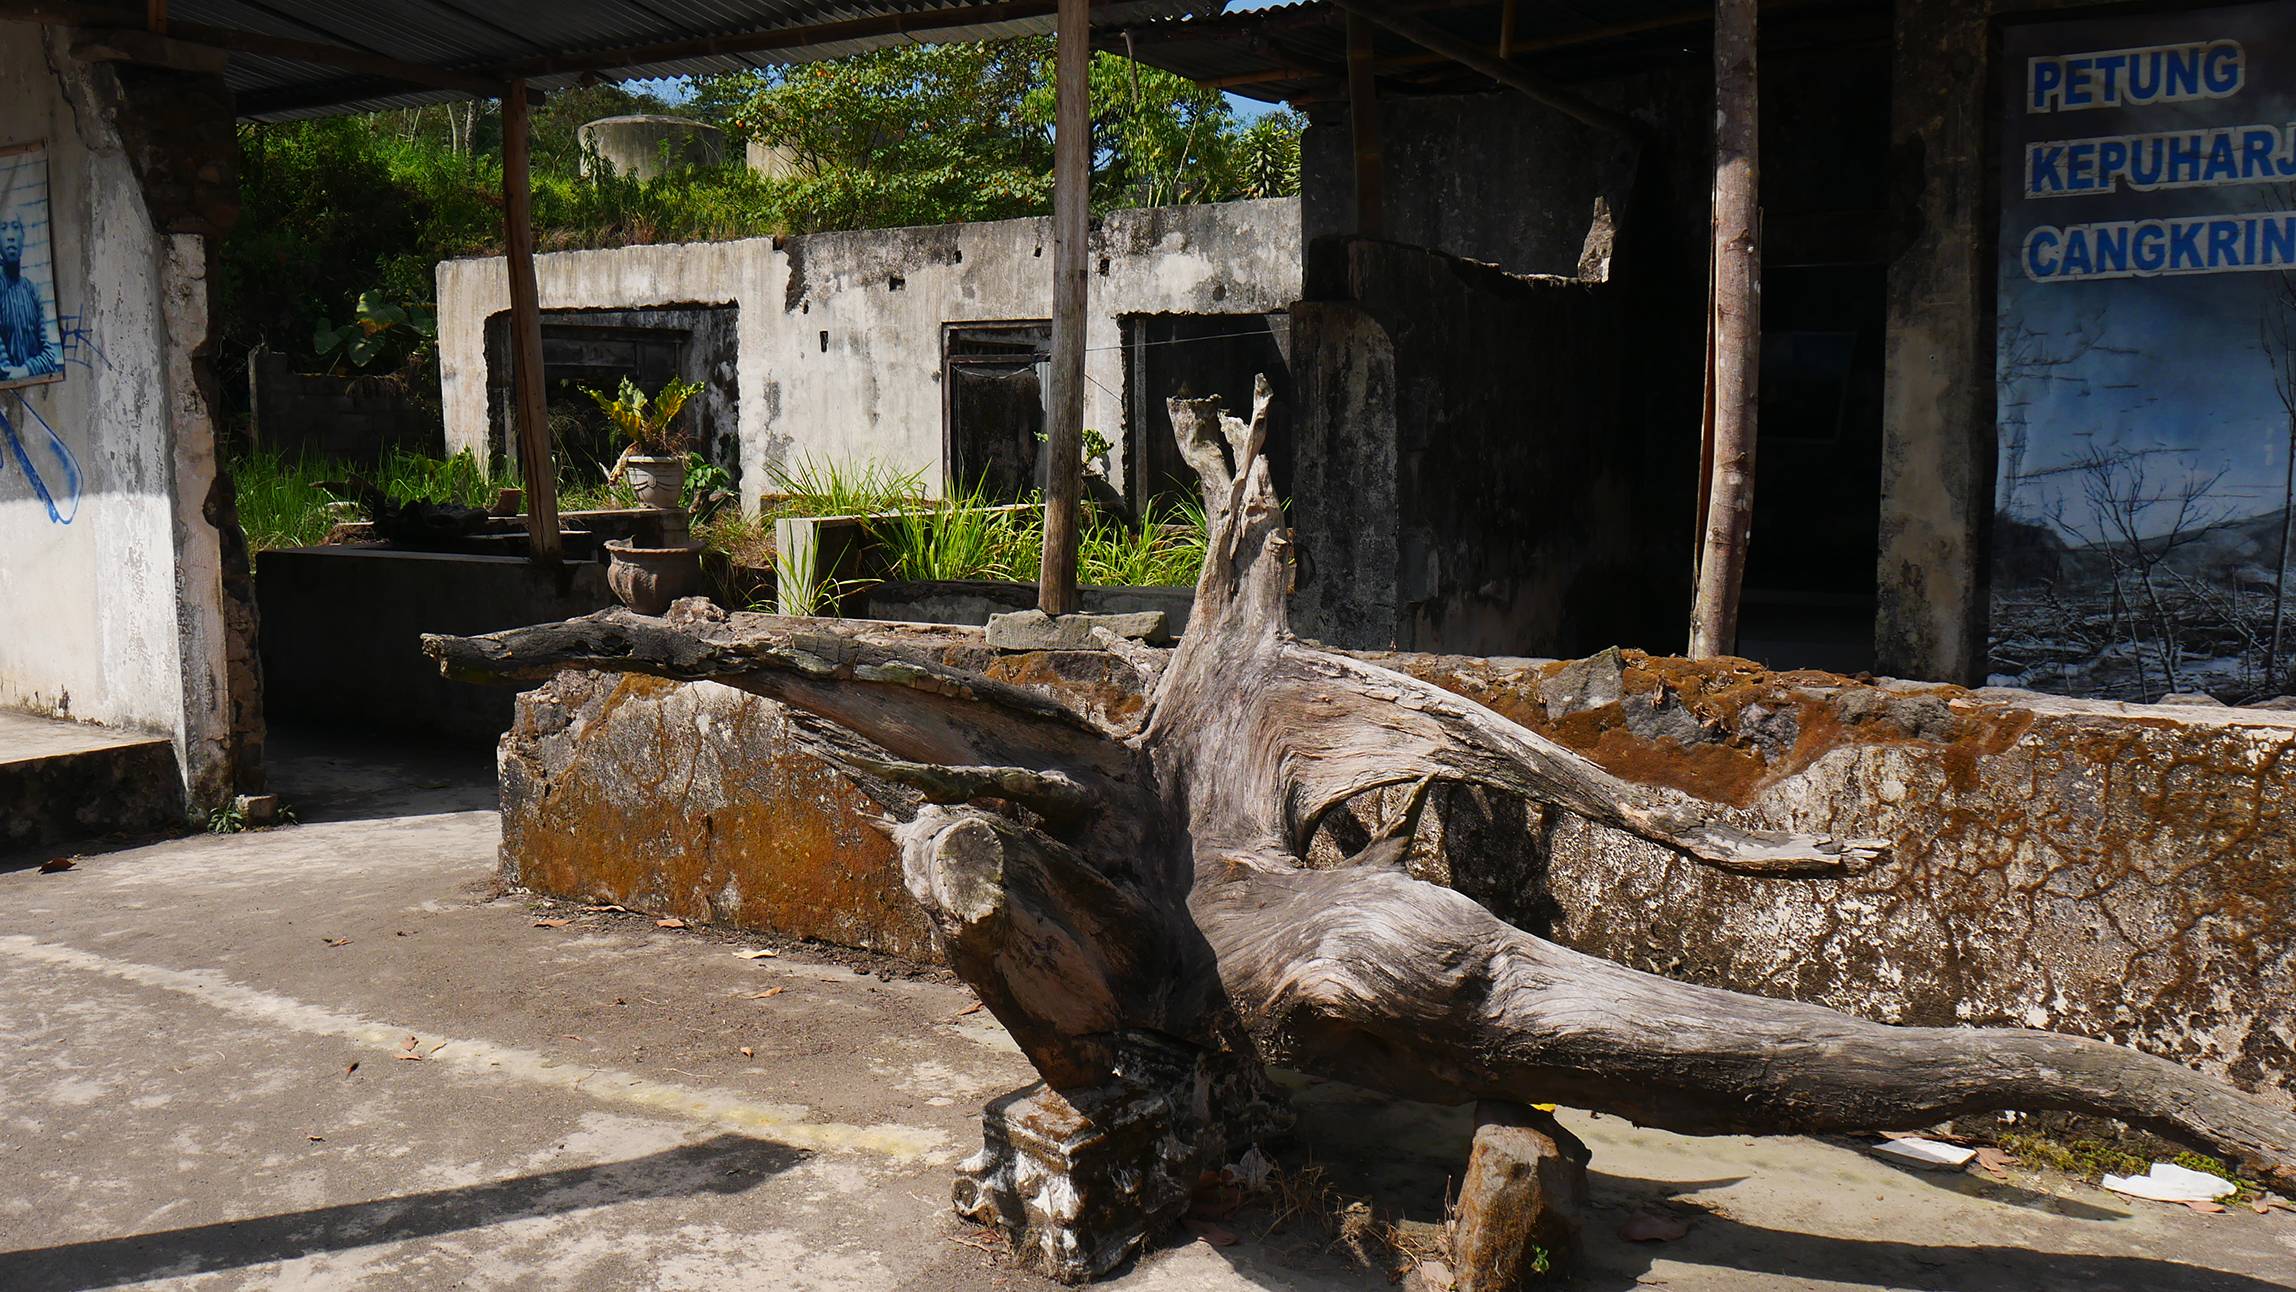 Pohon yang mati di depan rumah Almarhum Mbah Lurah Gunung Merapi Yogyakarta Indonesia © Arakita Rimbayana